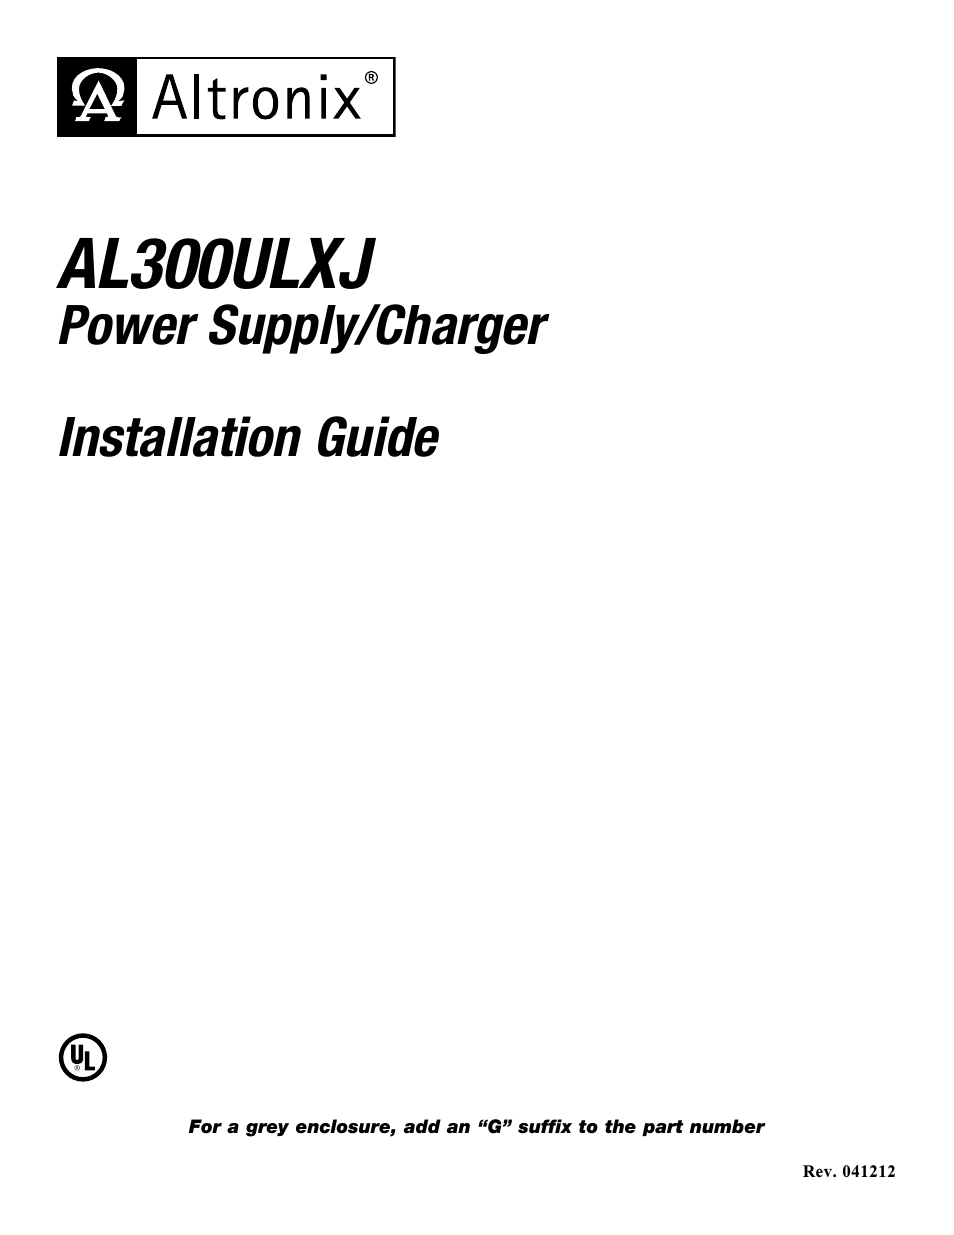 AL300ULXJG Installation Instructions